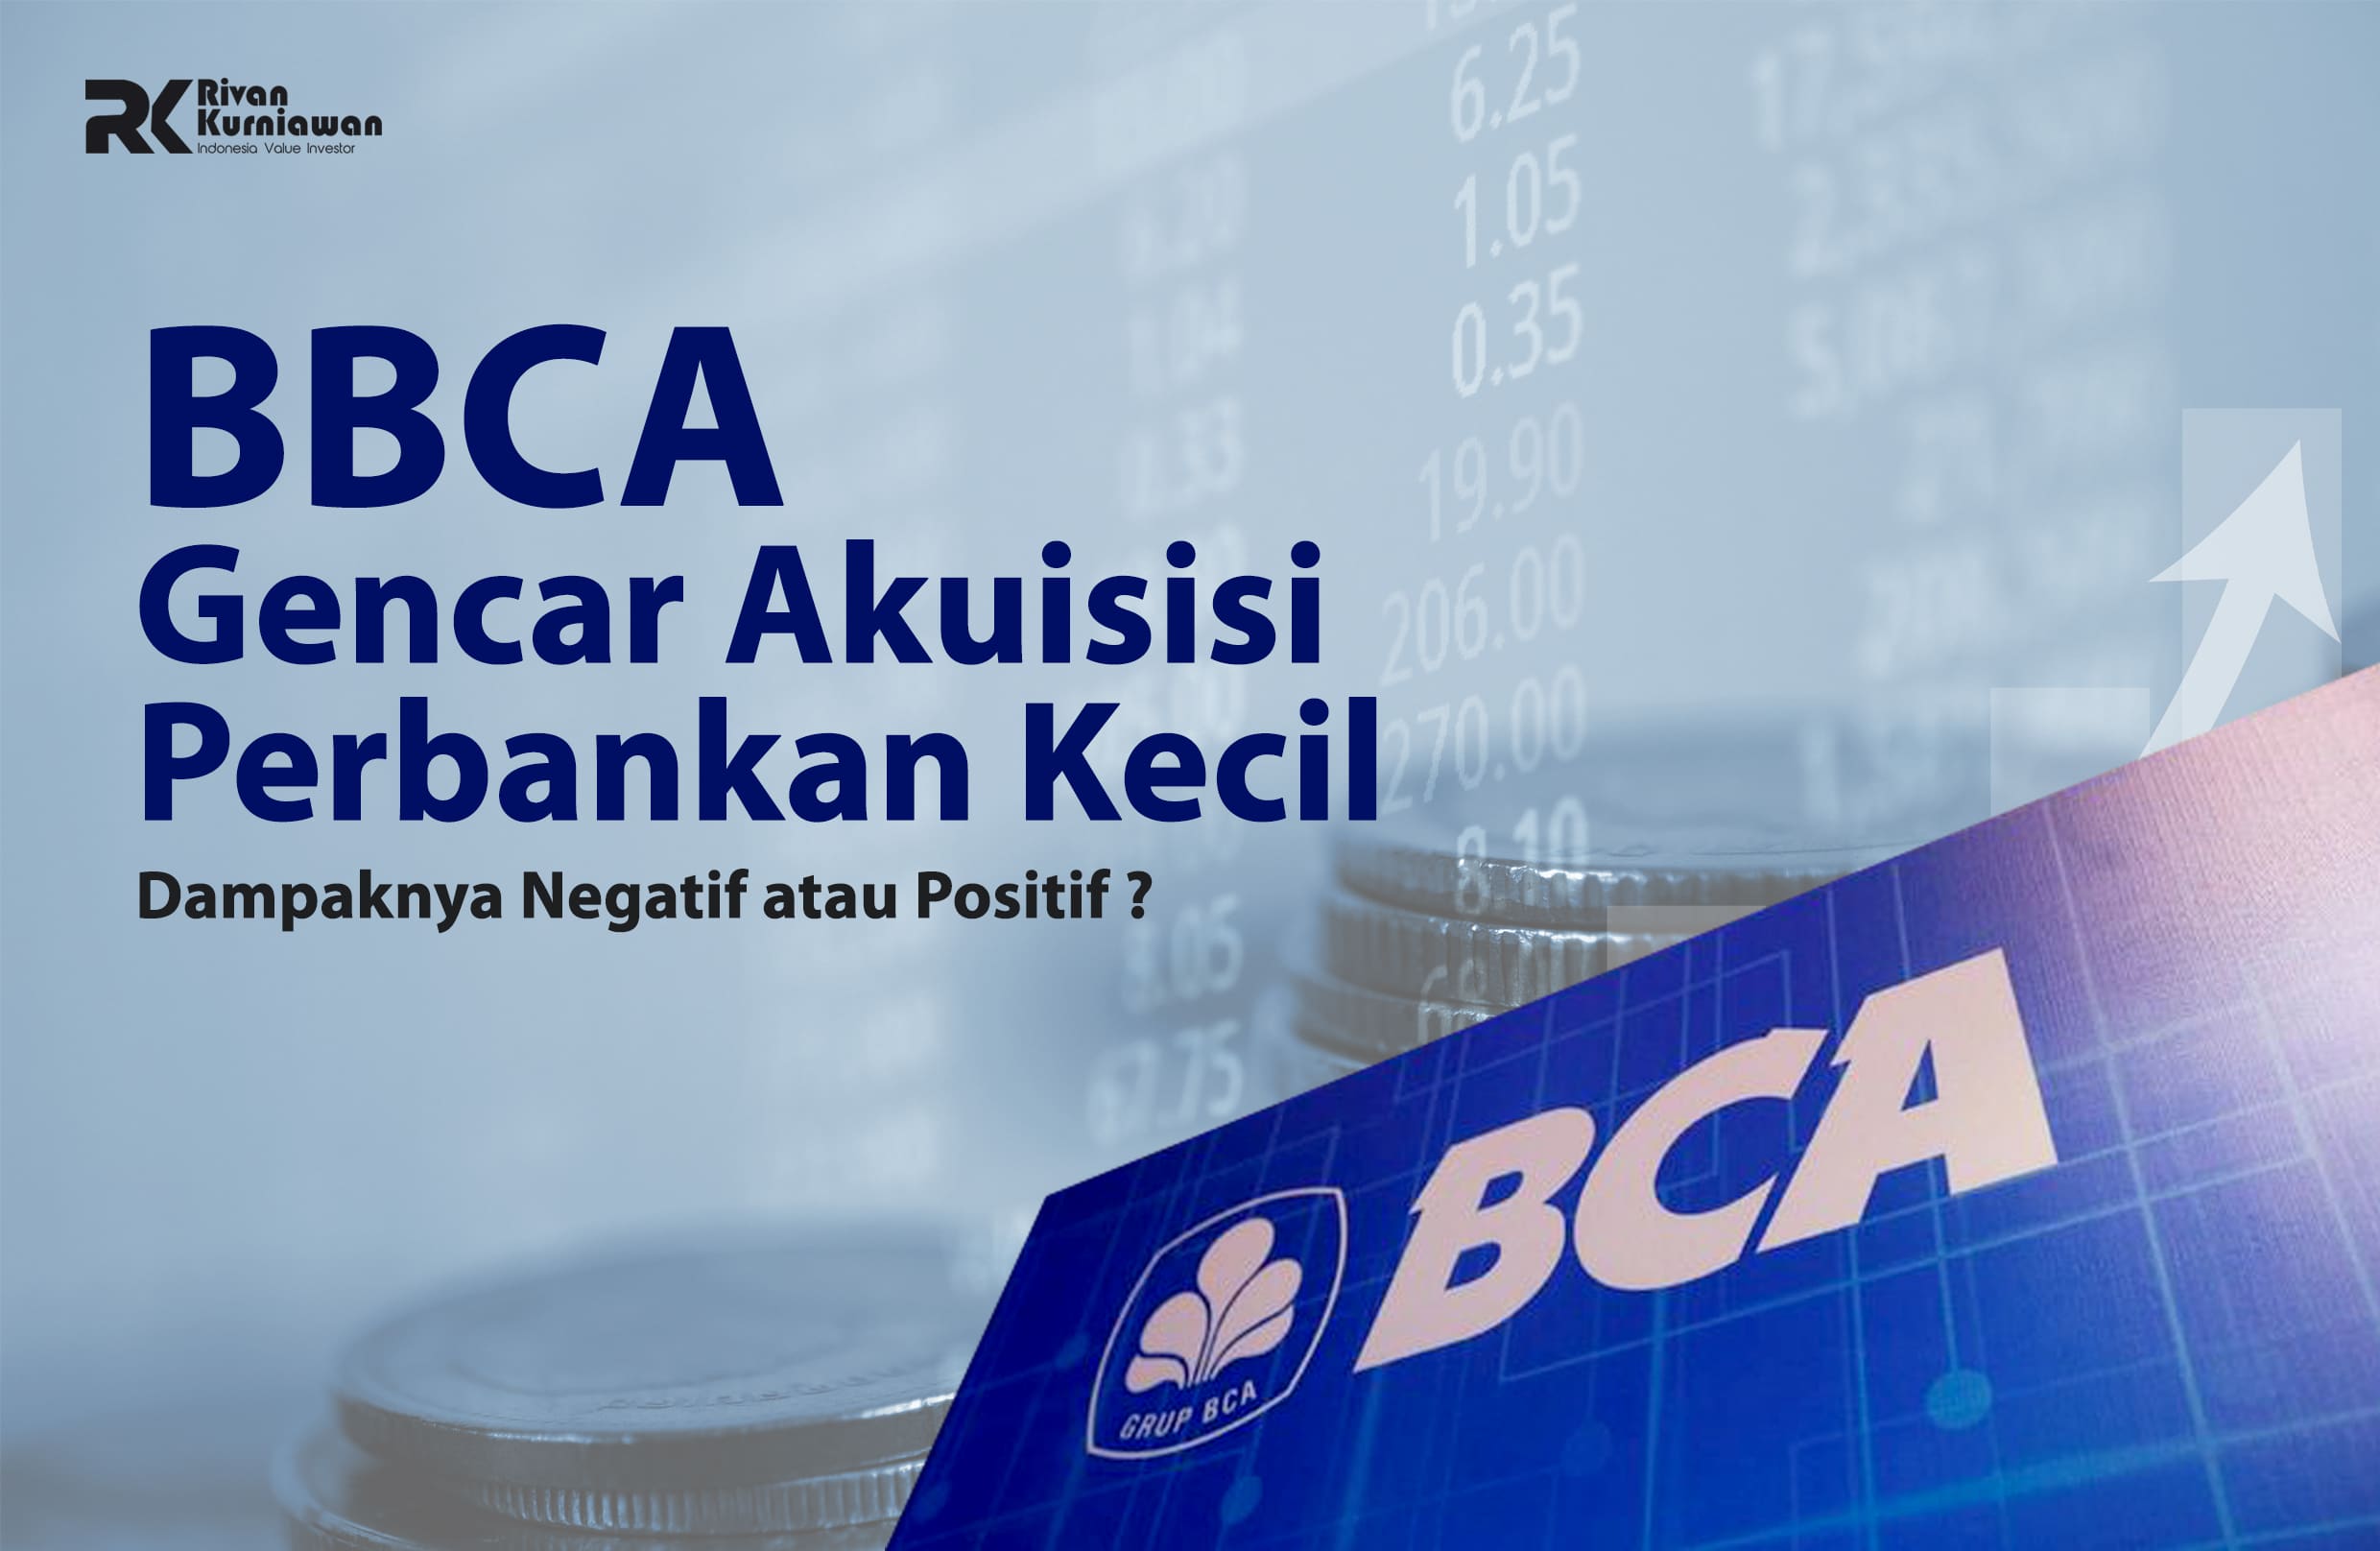 BBCA Akuisisi Perbankan Kecil